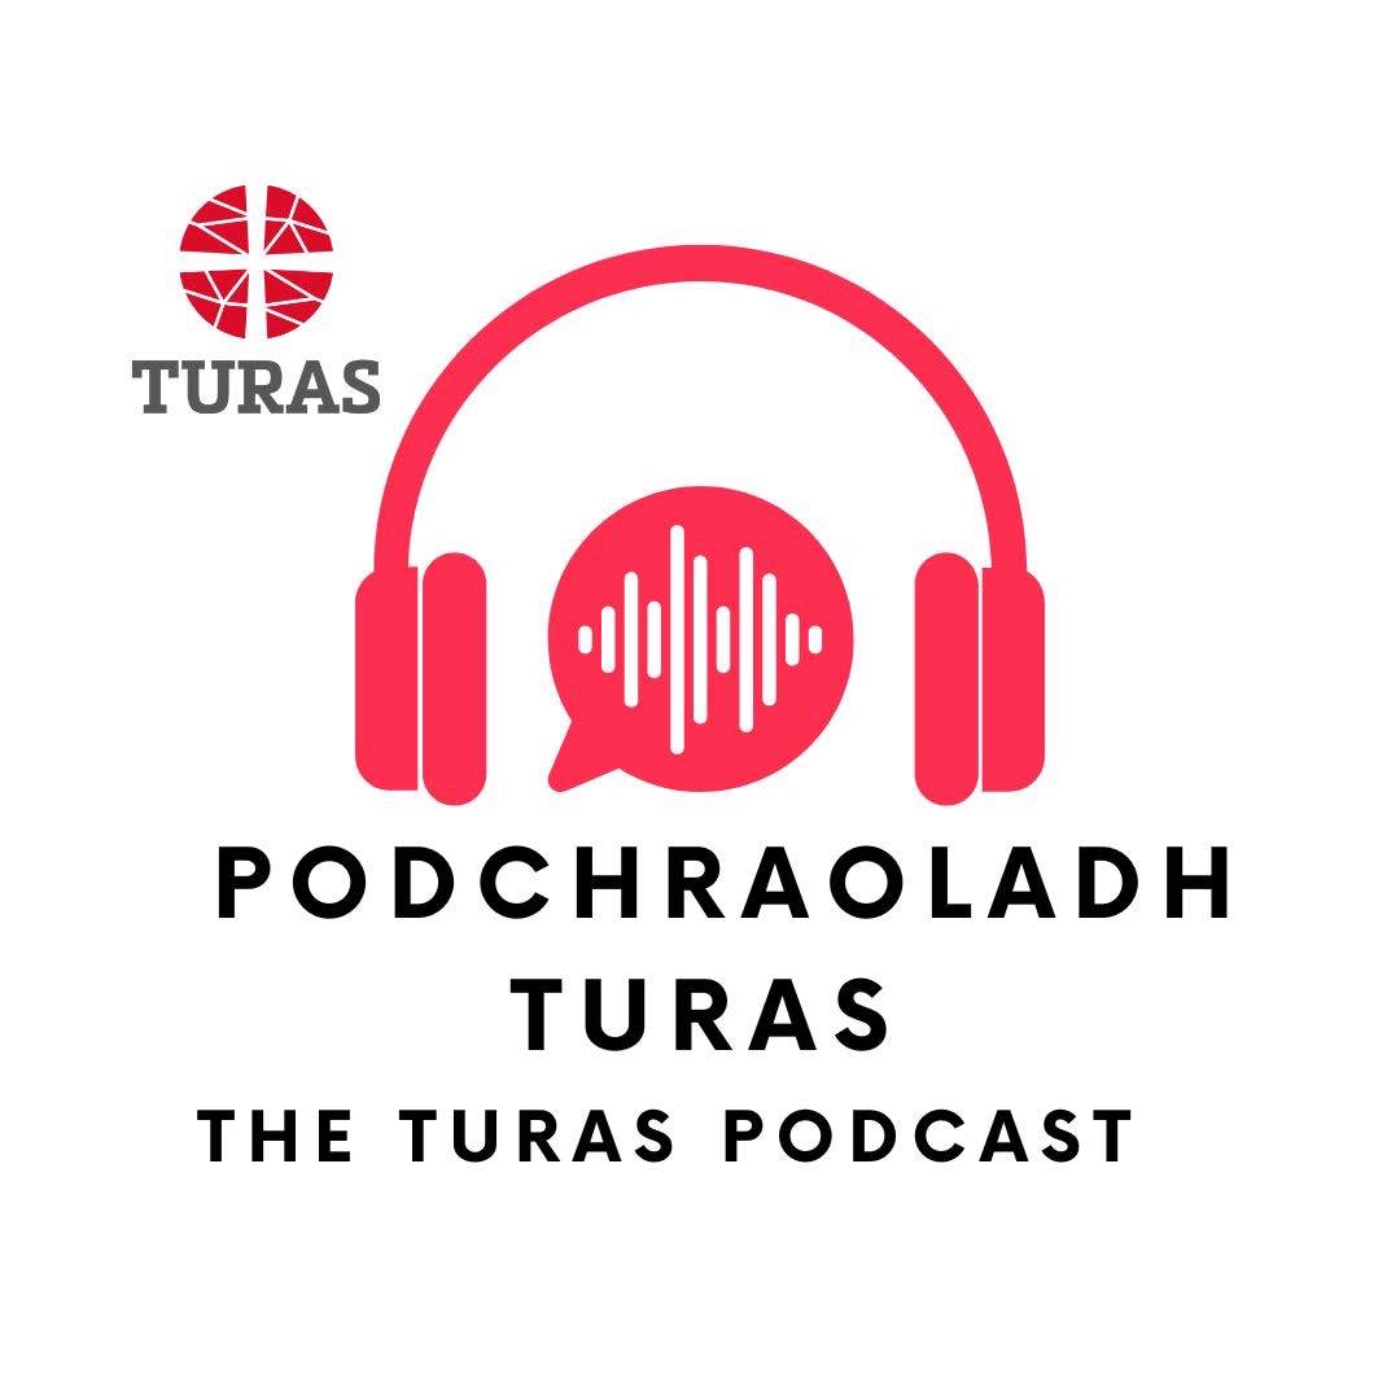 Podchraoladh Turas - Turas Podcast: Réamhbhlaiseadh/Trailer